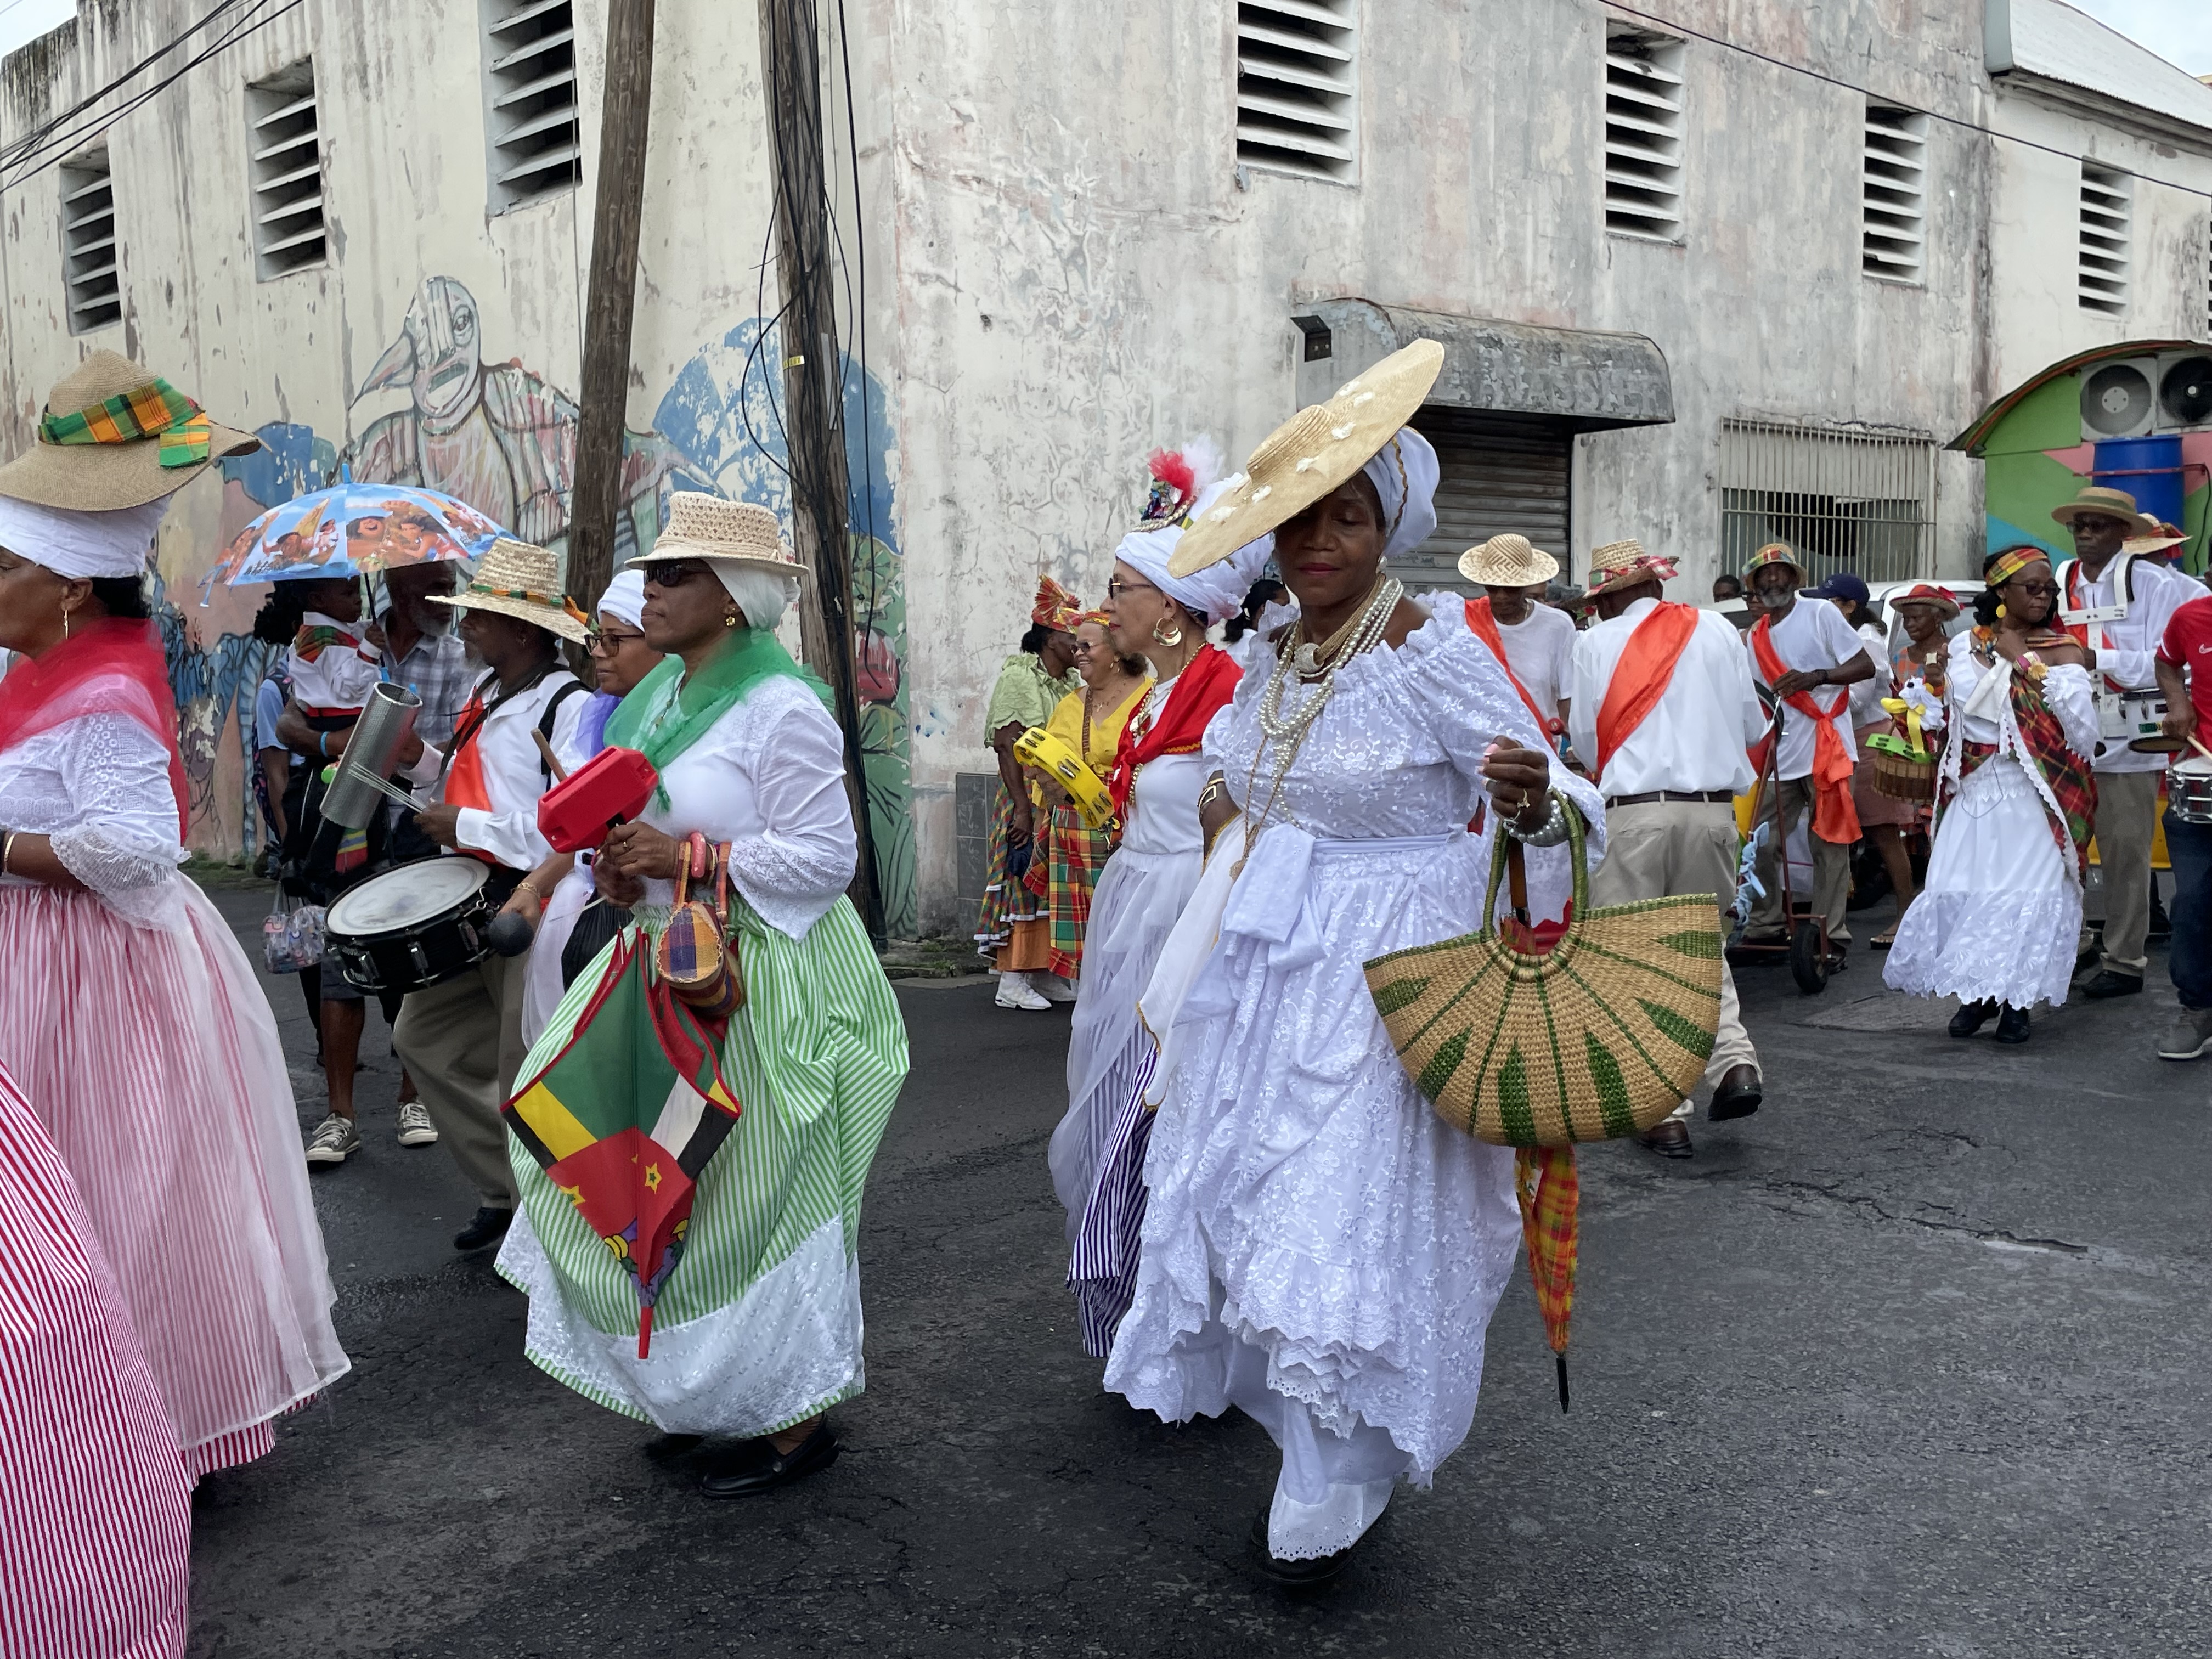     Qu’est-ce que le « Creole Day » à la Dominique ?

